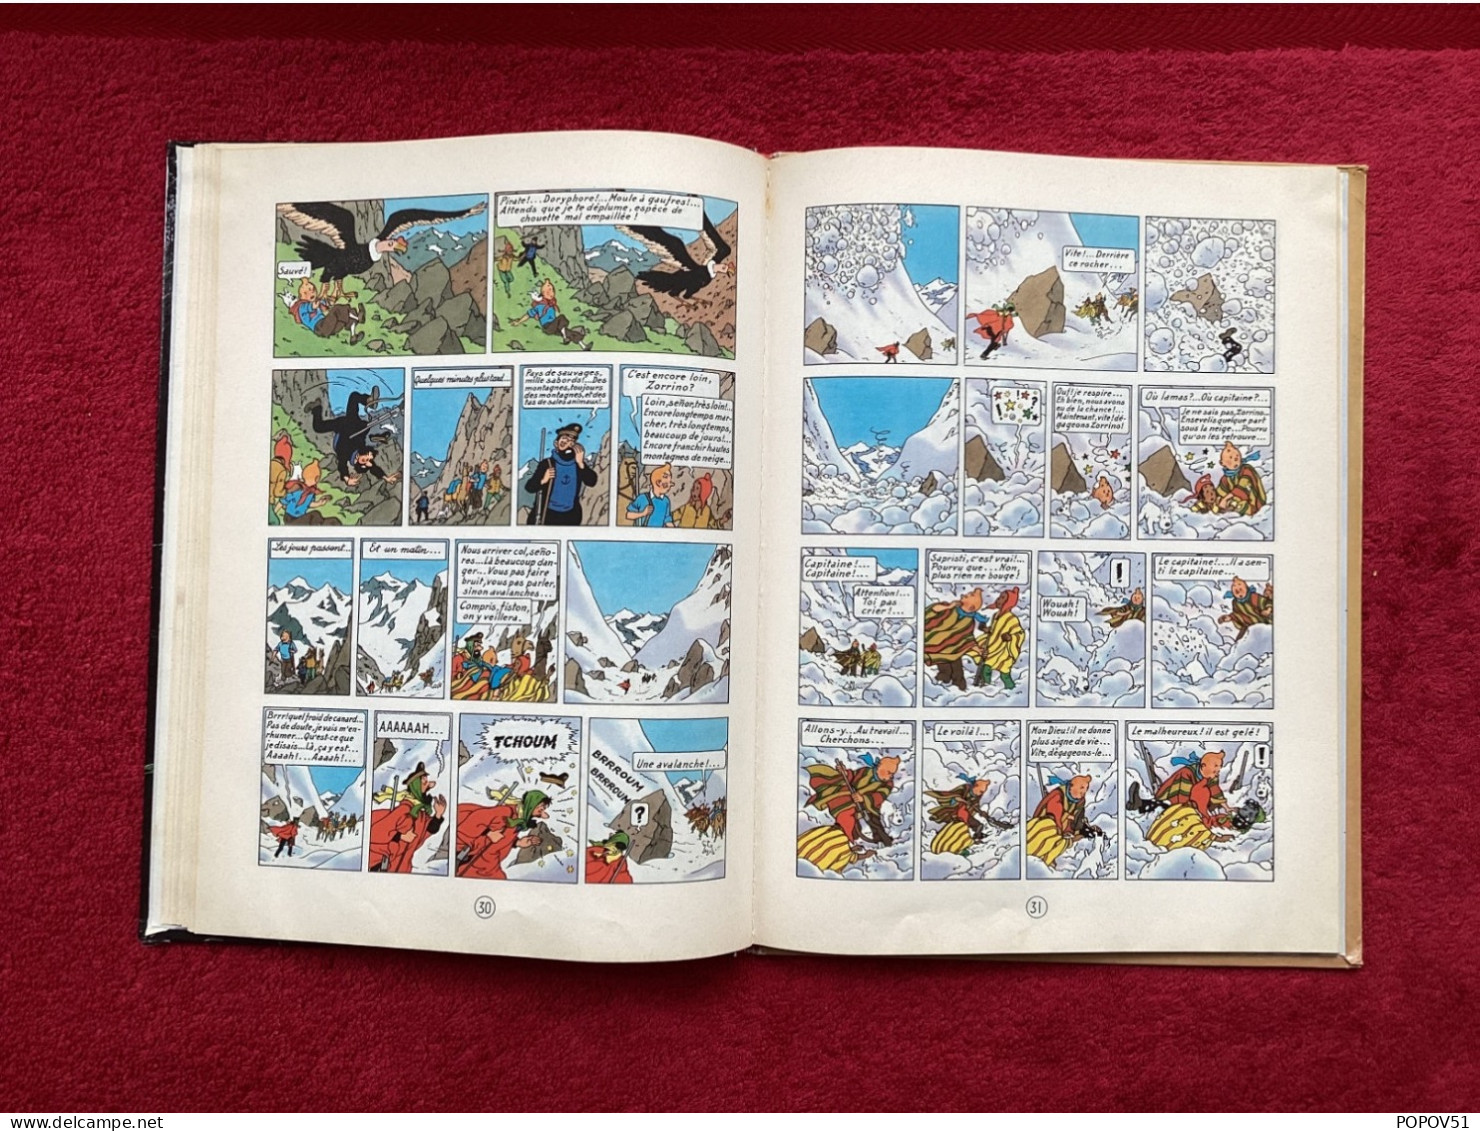 Hergé dedicace dans album Le Temple du Soleil